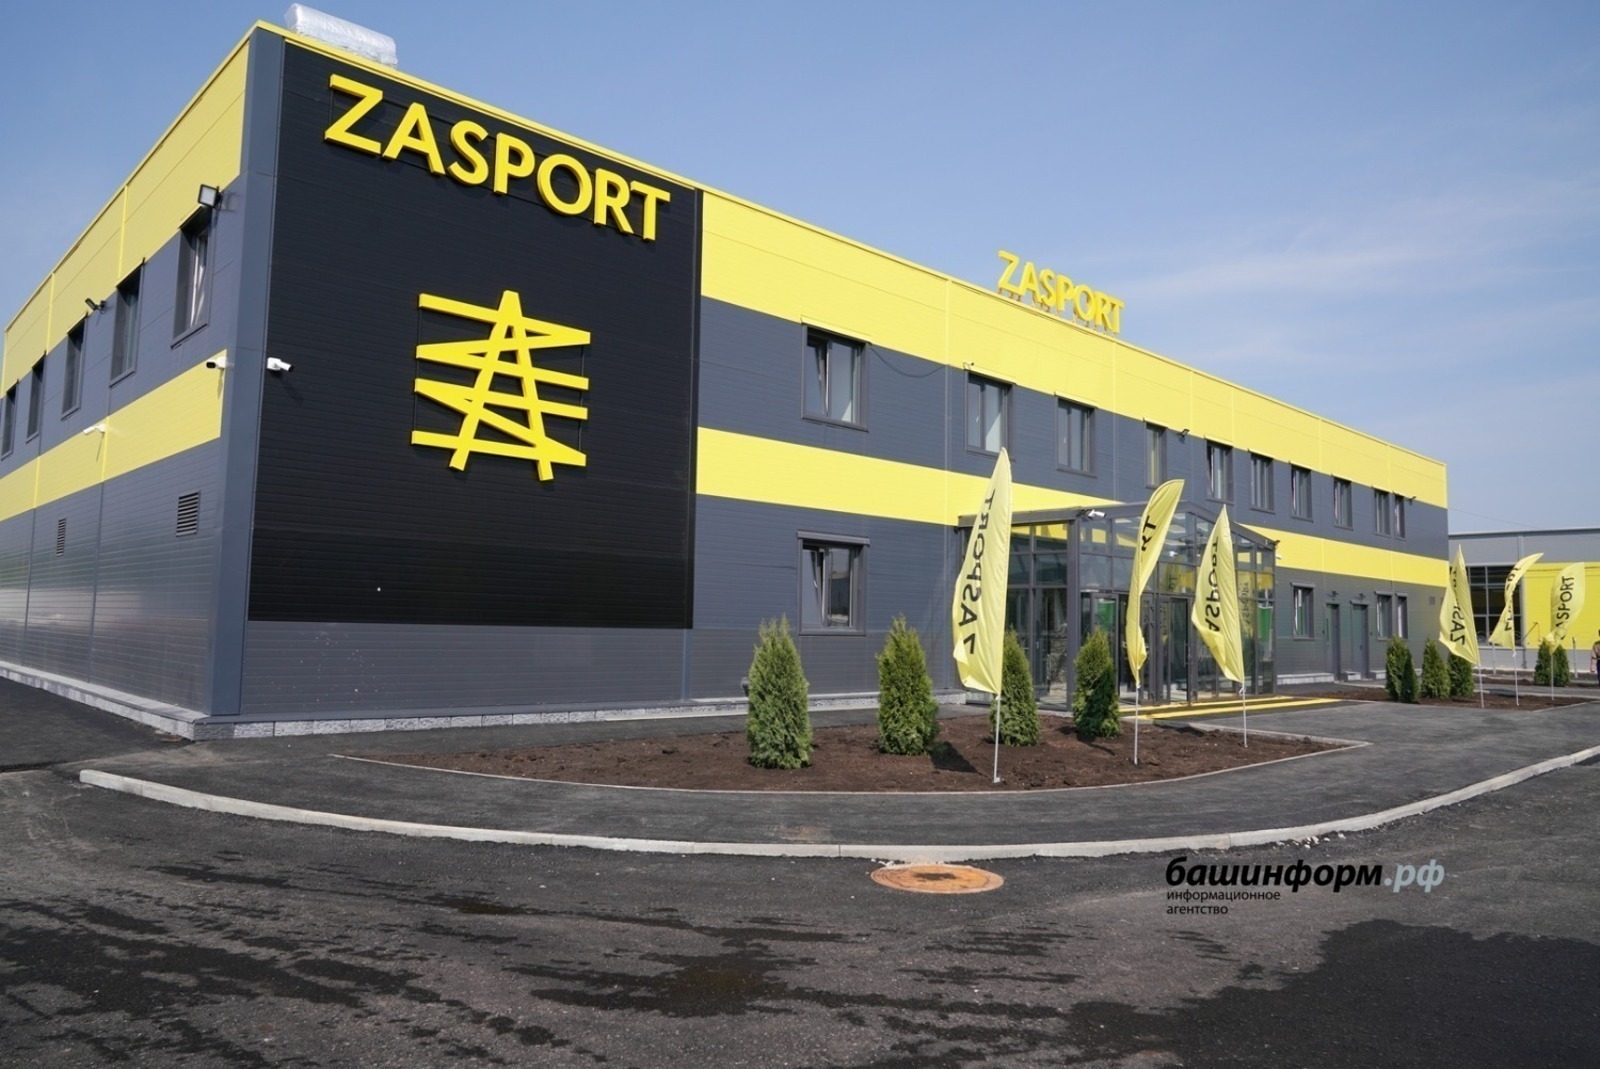 Мнения экспертов  о фабрике  ZASPORT в Башкирии